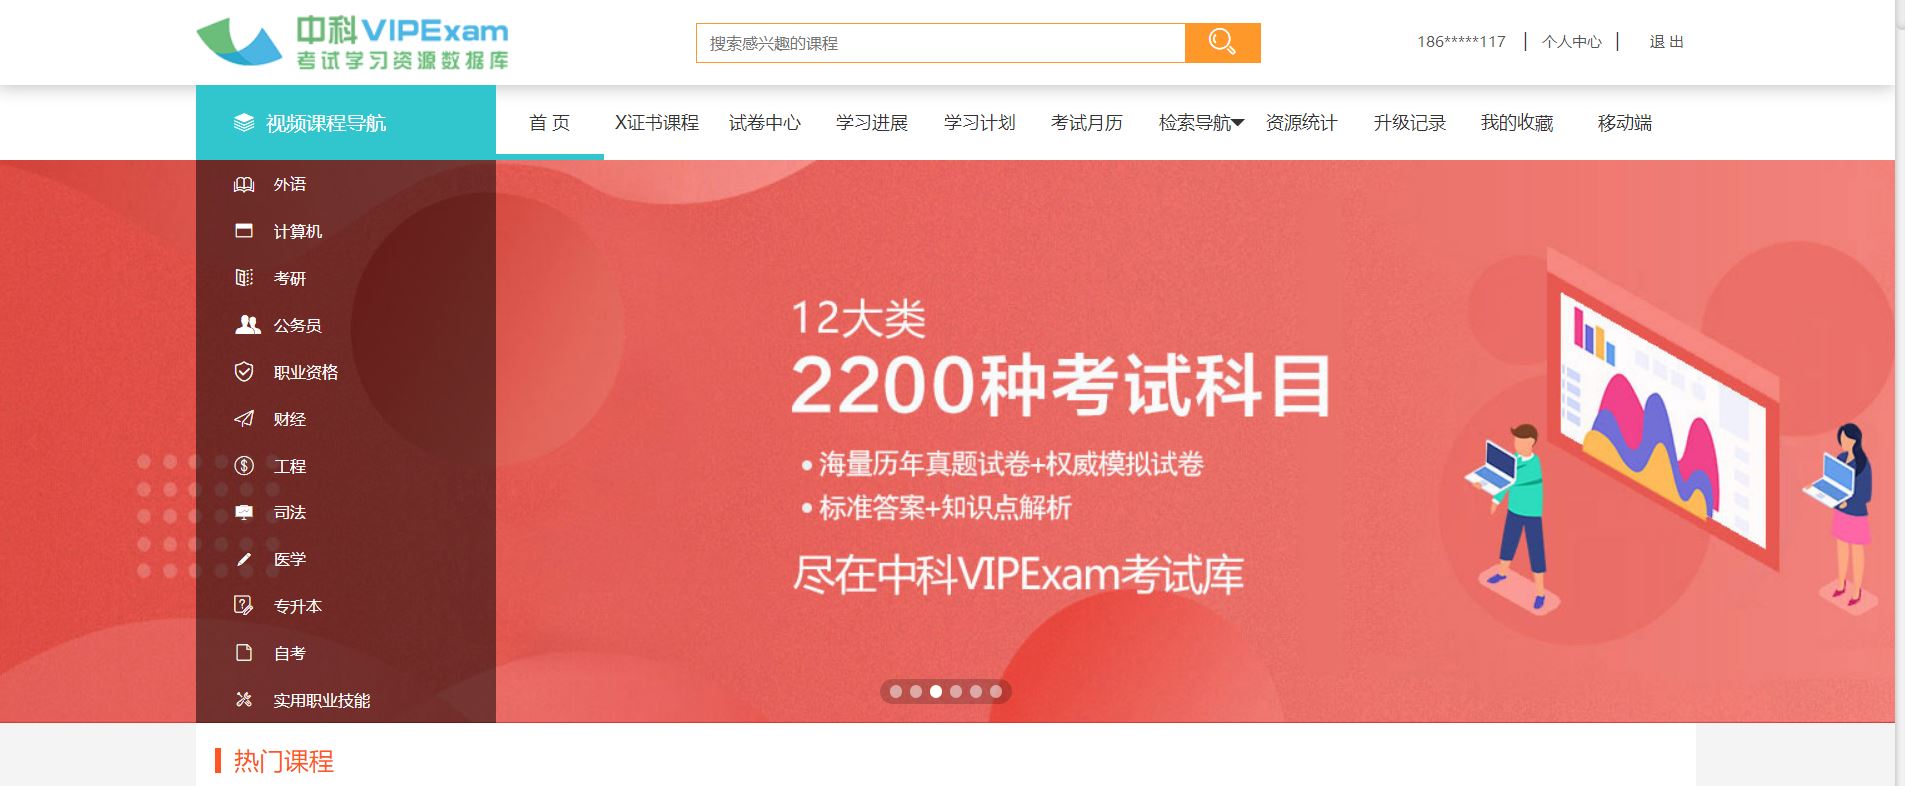 中科VIPExam考试学习资源数据库